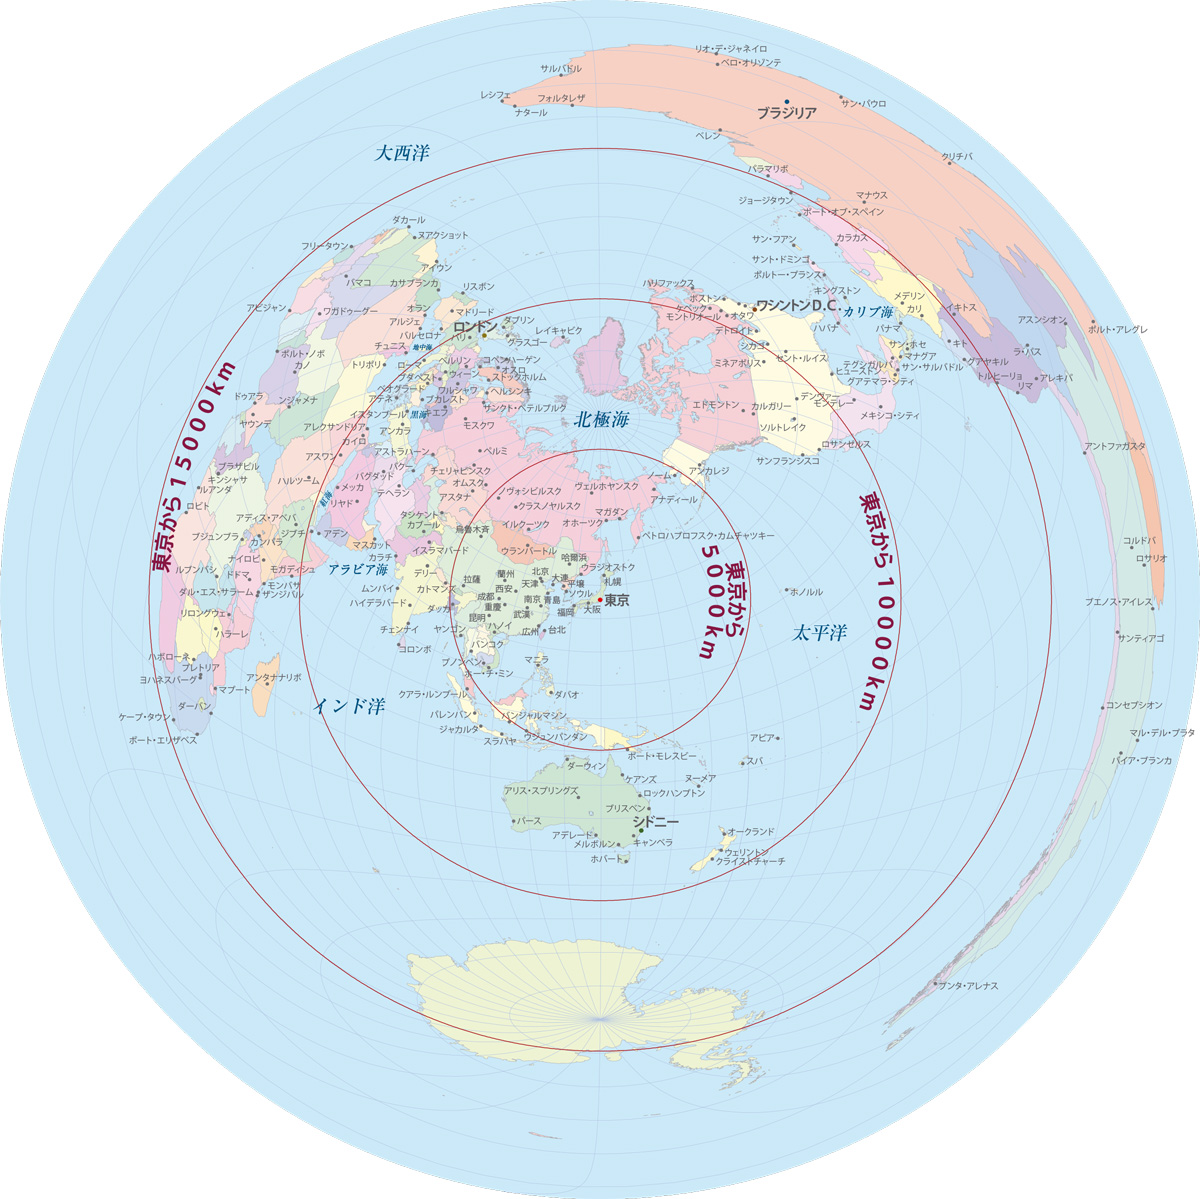 ジオコラム 日本から世界各地の距離 Pacificvision Corp Geospatial Div